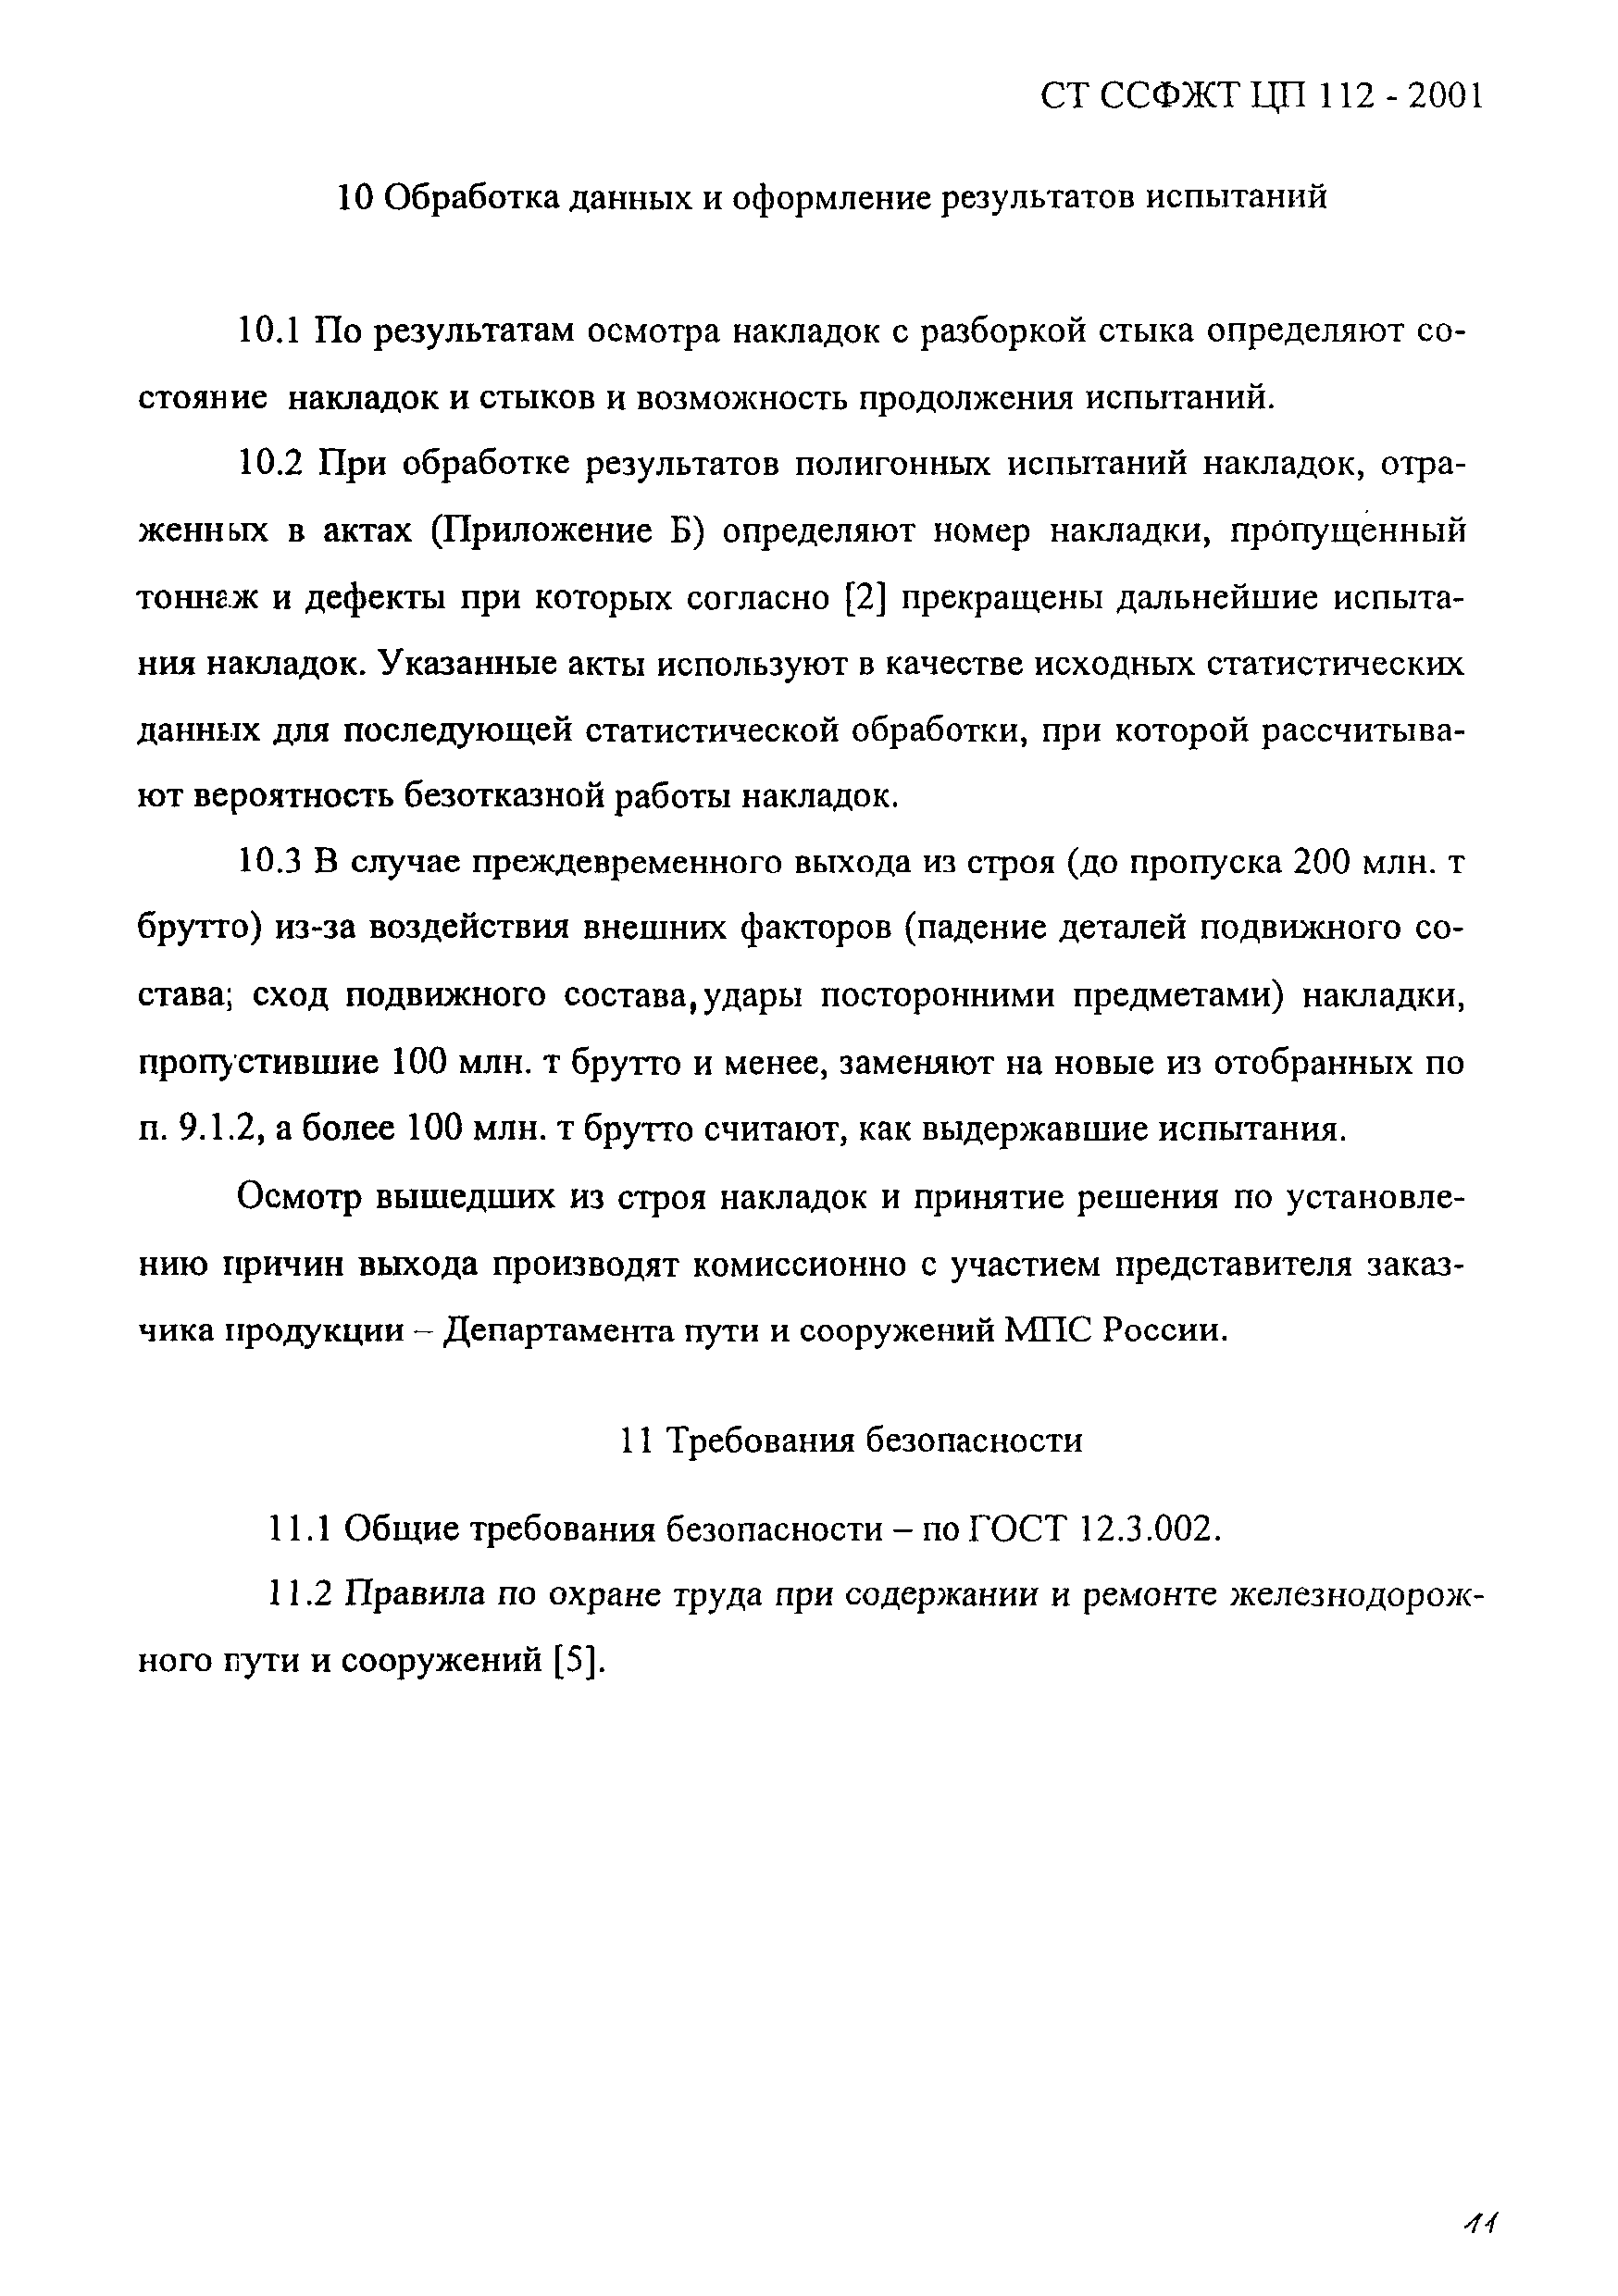 СТ ССФЖТ ЦП 112-2001